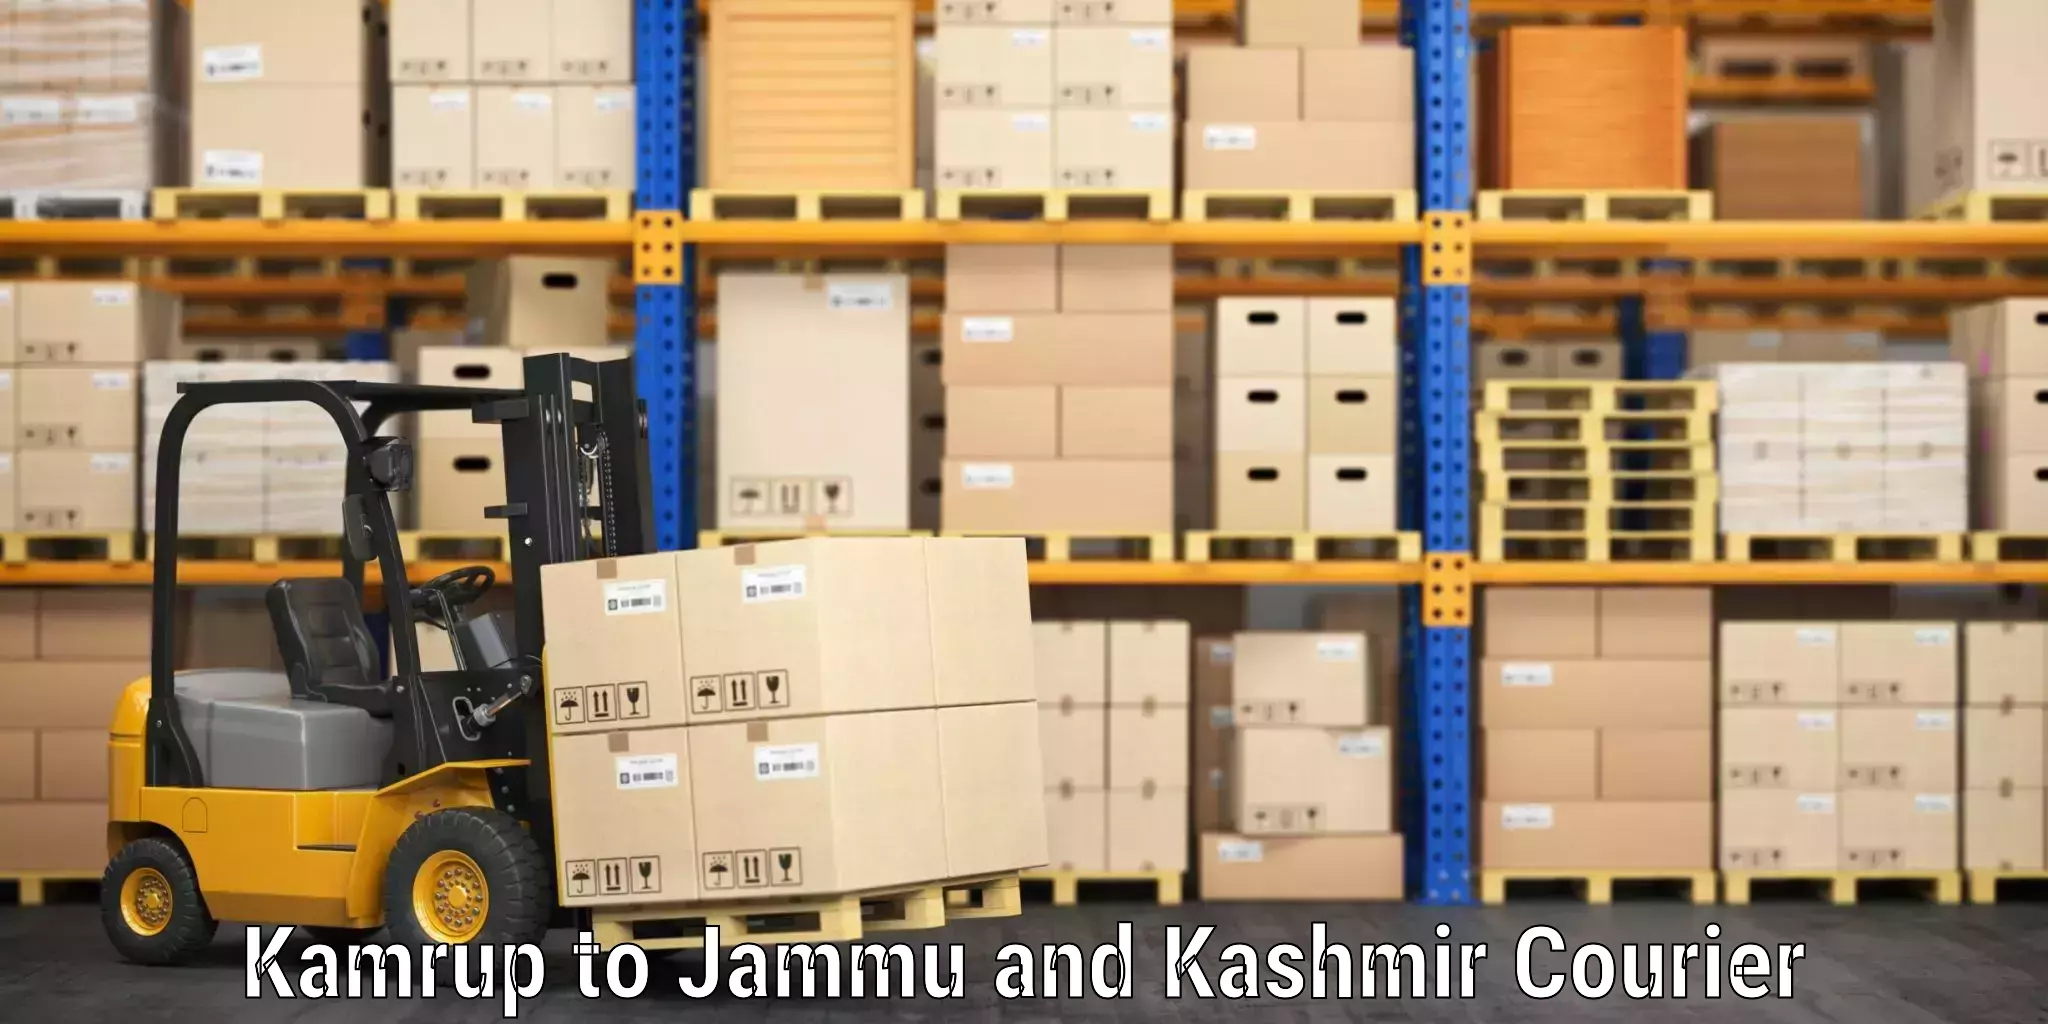 Luggage delivery providers Kamrup to IIT Jammu